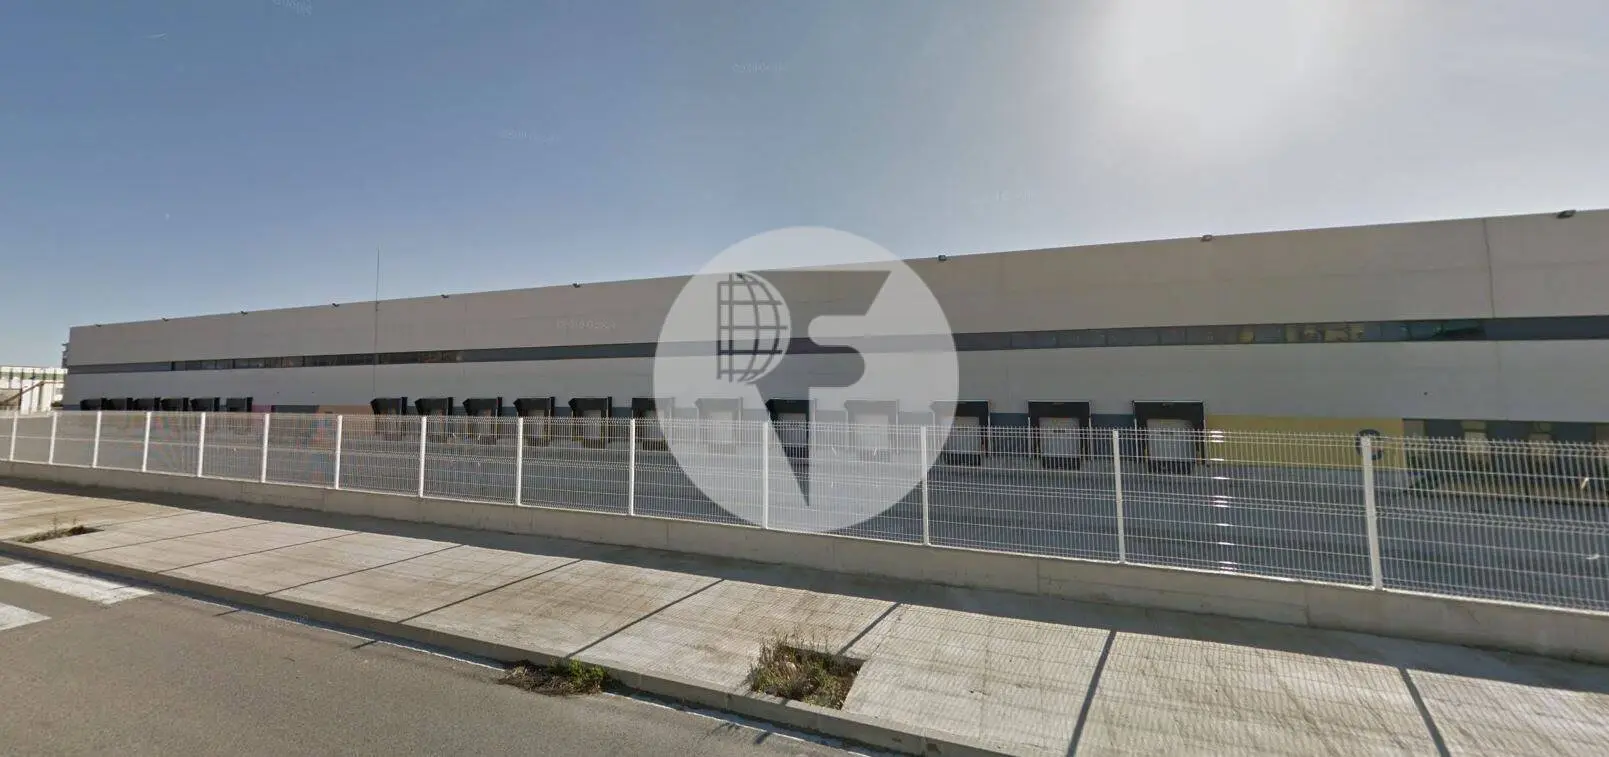 Nave logística frigorífica en alquiler 4.469 m² - Zona Franca, Barcelona. 